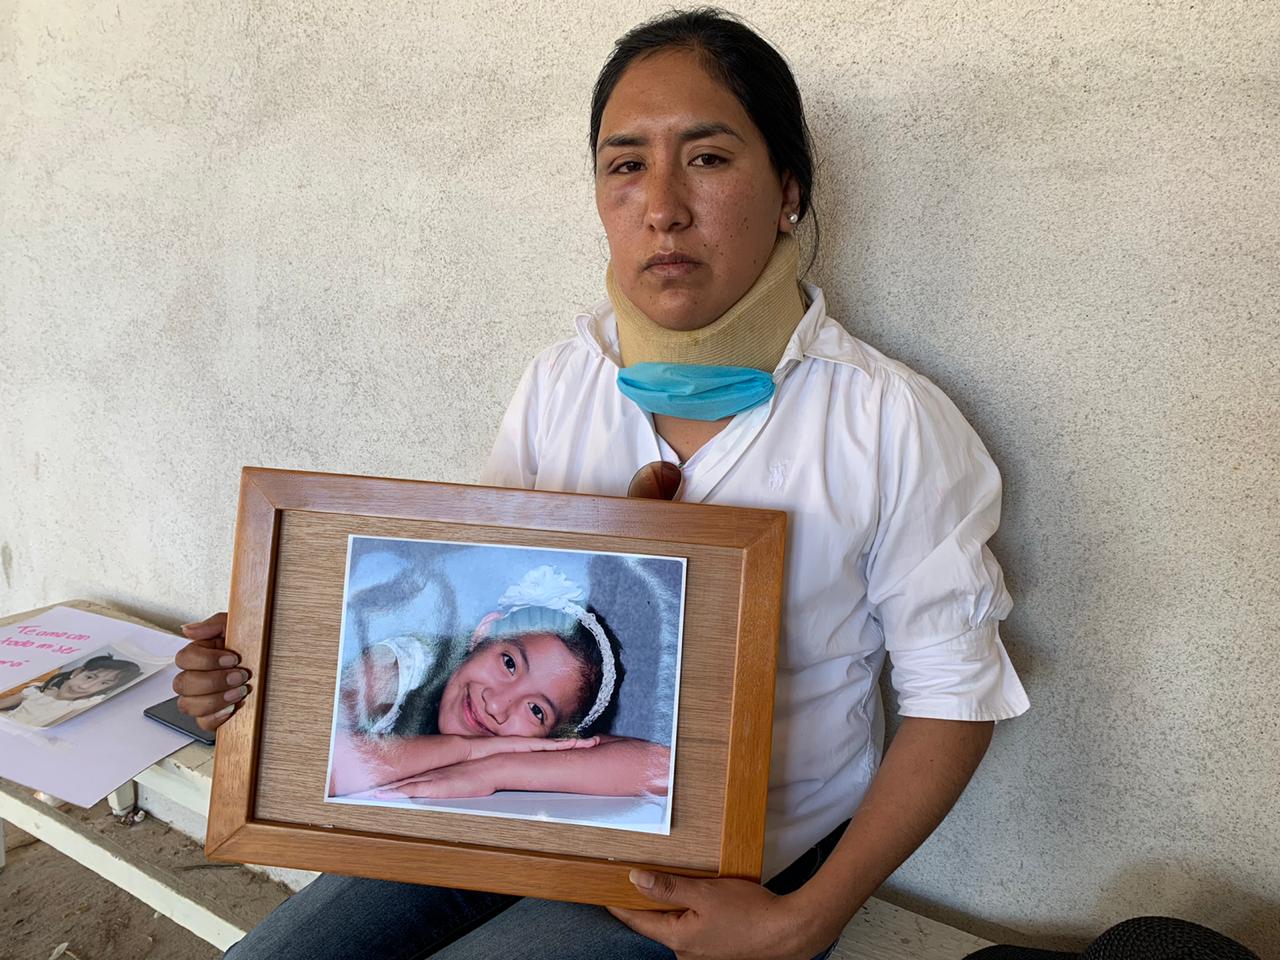  Madre exige justicia por su hija que murió atropellada el 24 de diciembre